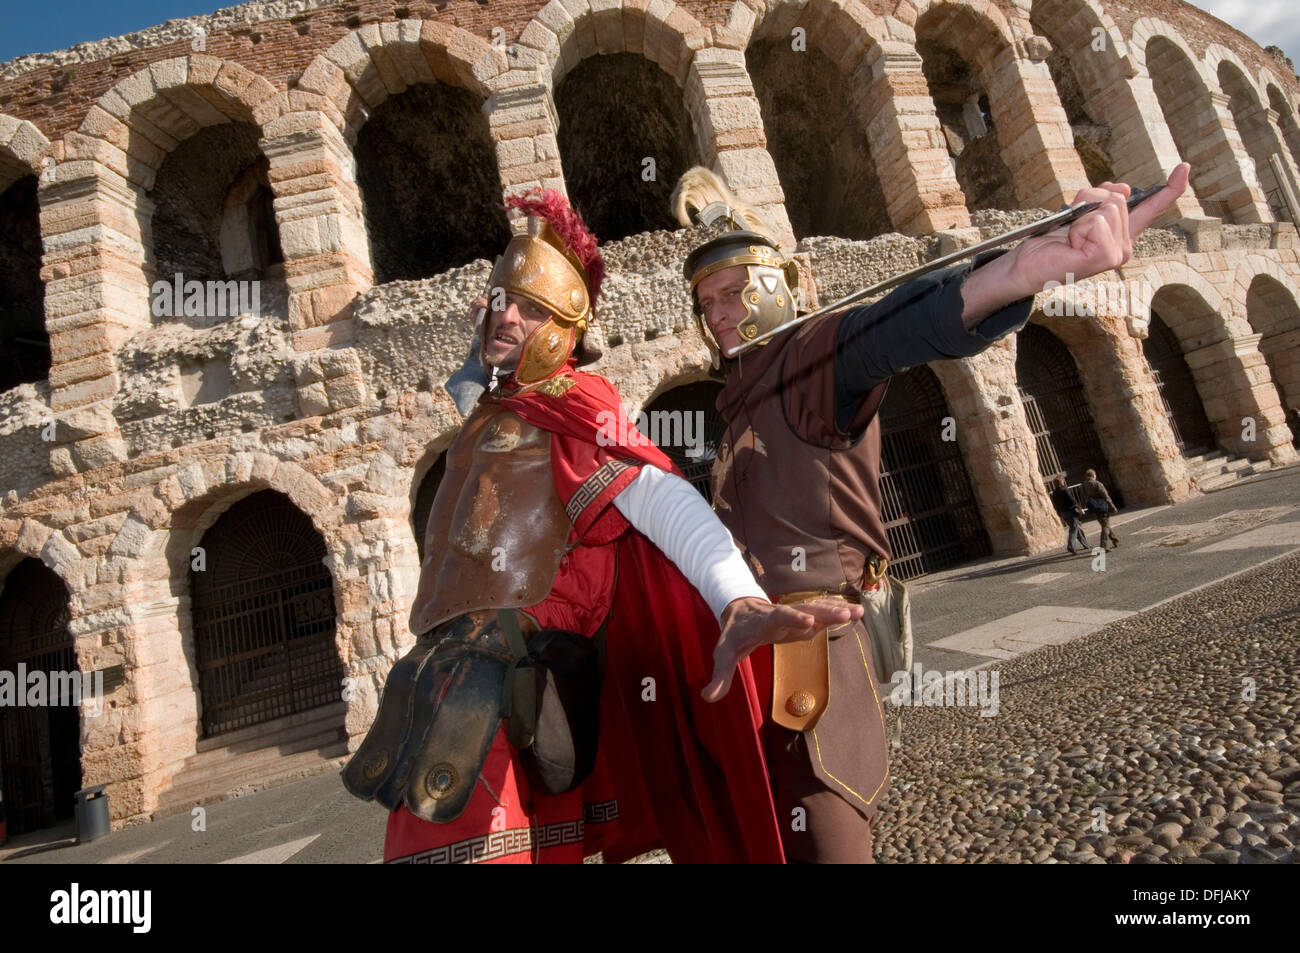 Verona: a Arena na época dos Gladiadores